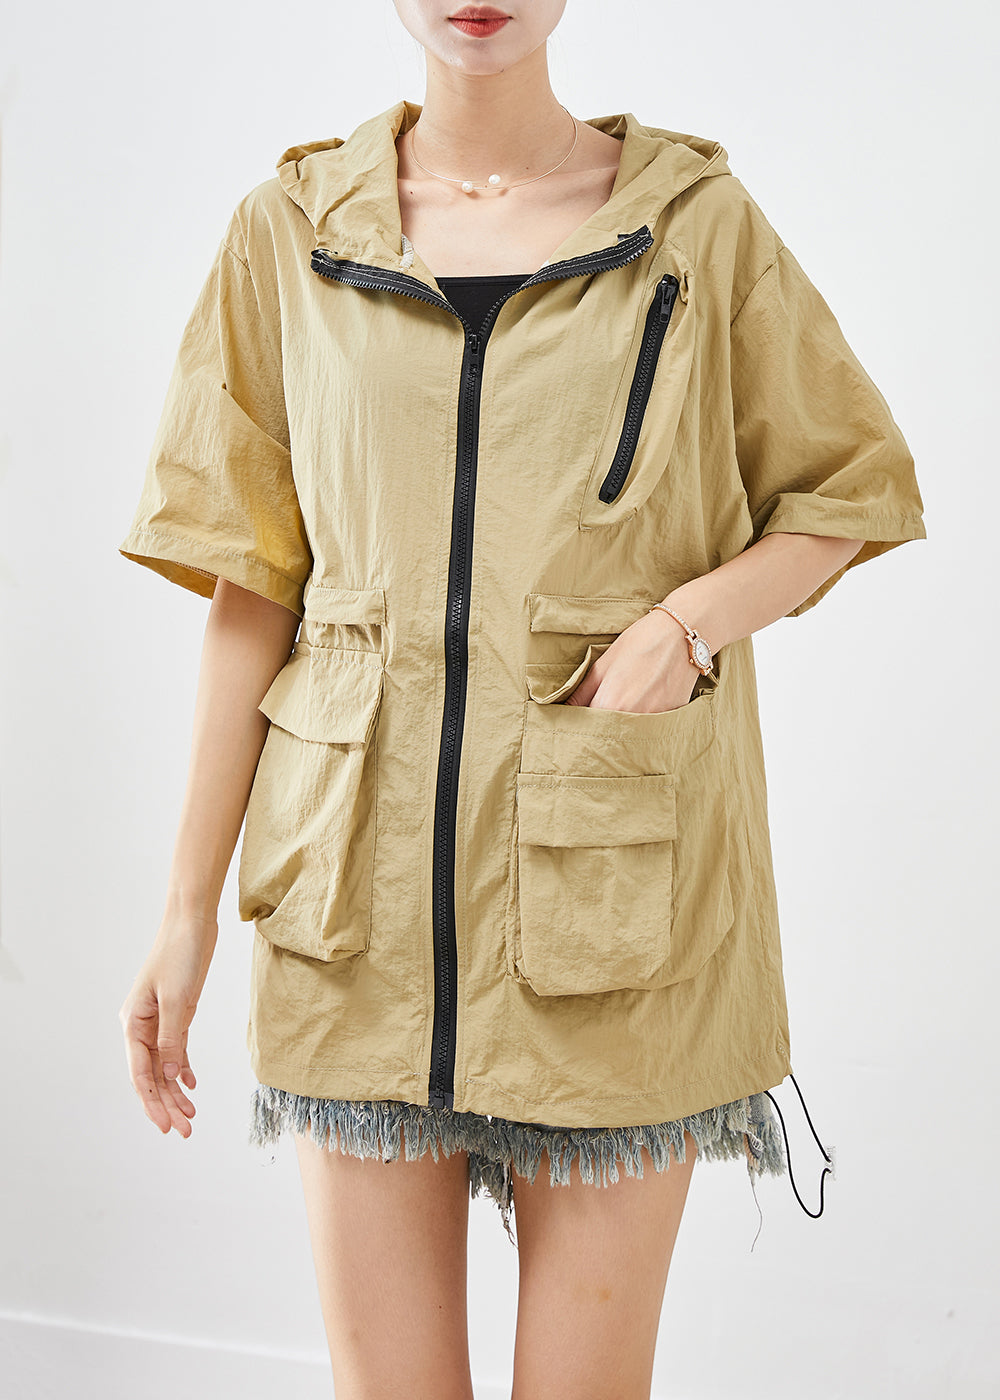 Classy Khaki Zip Up Pockets UPF 50+ Coat Jacket Summer